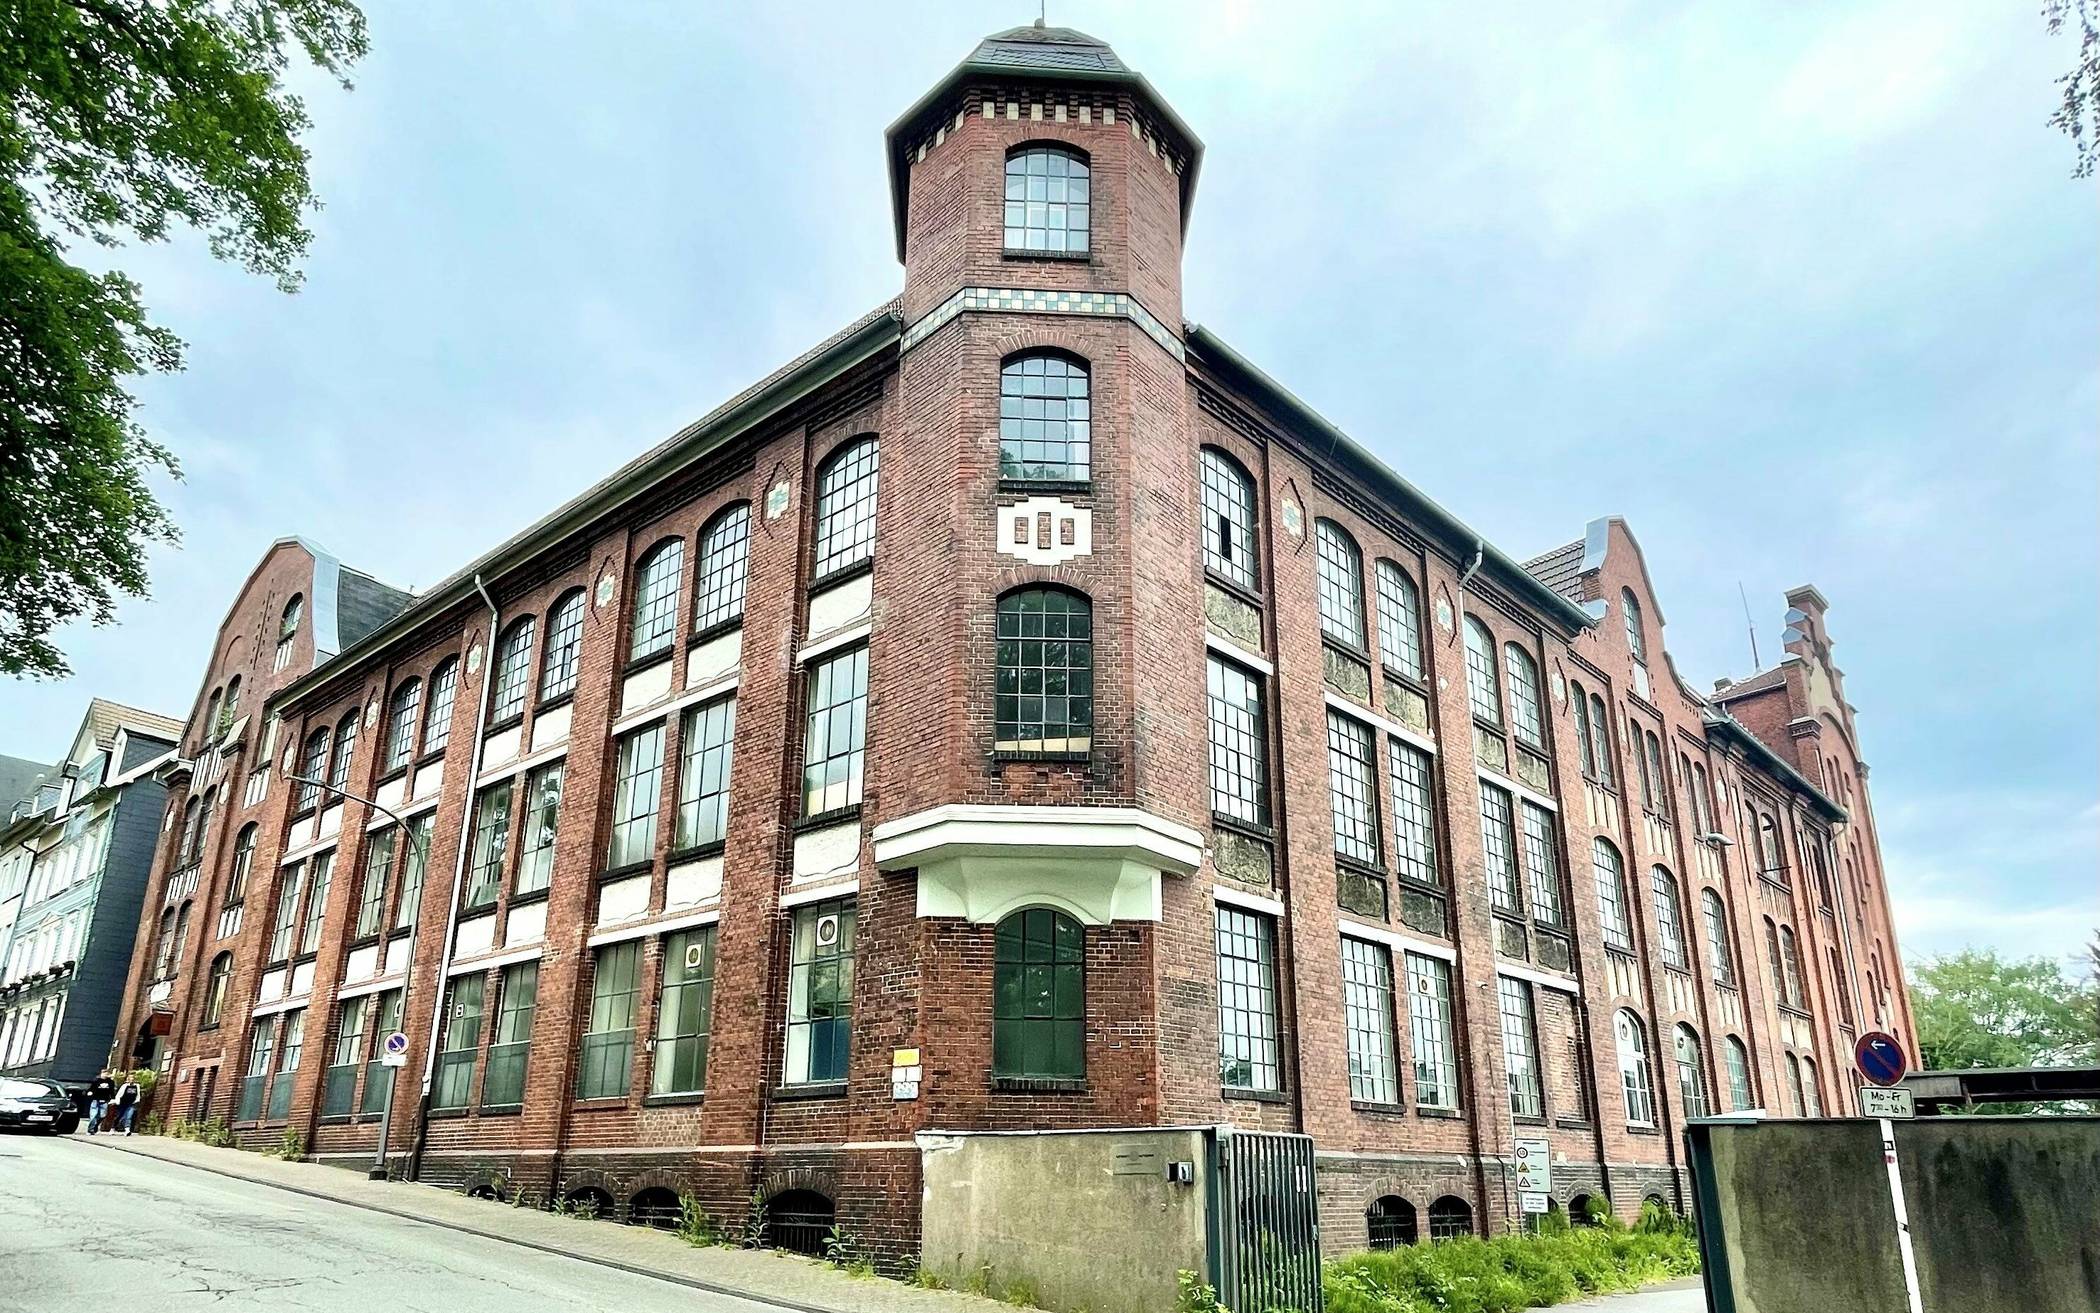  Die historische Knopffabrik an der Alarichstraße auf dem Sedansberg.  